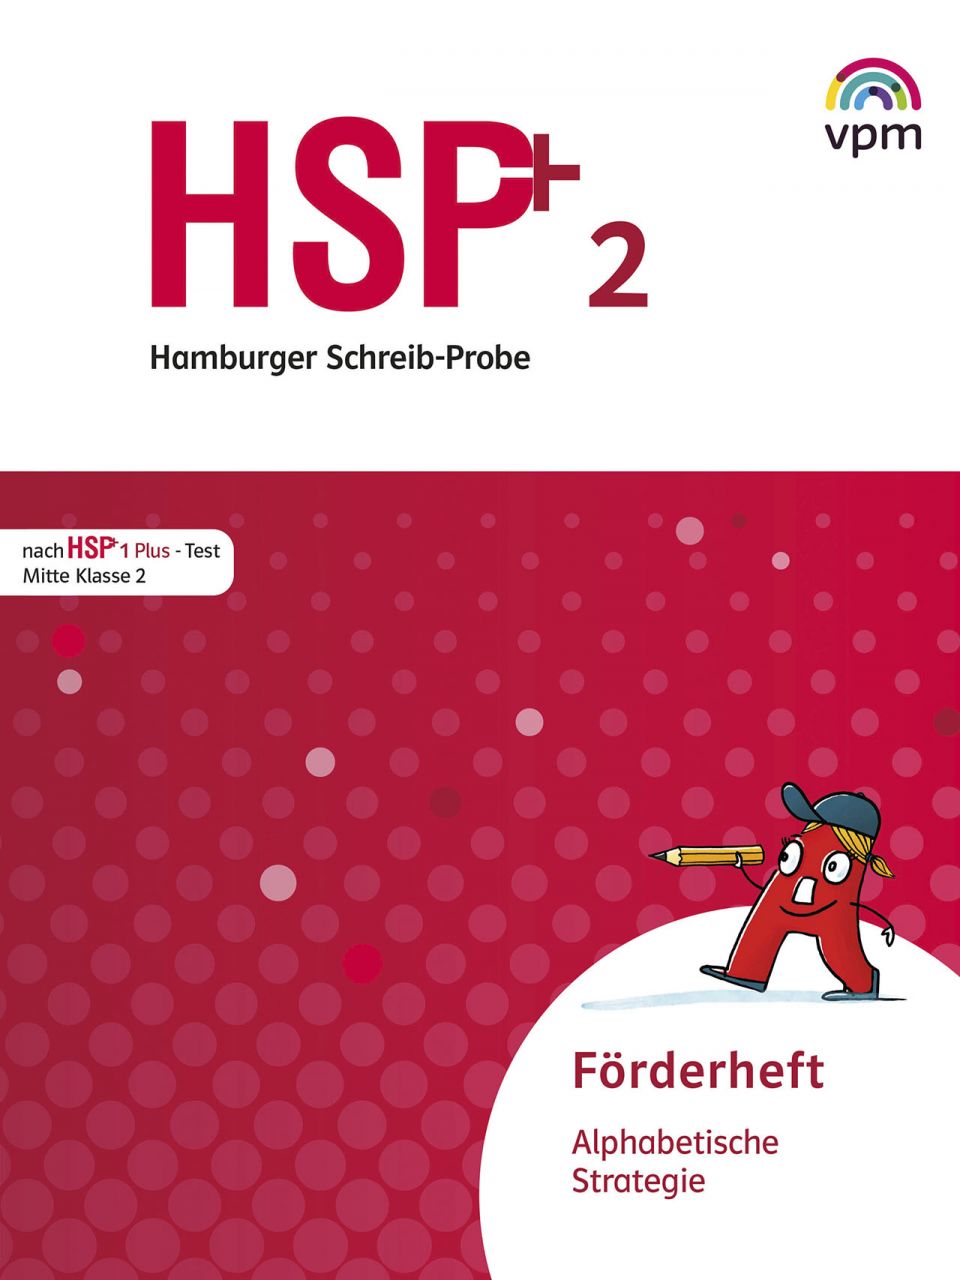 HSP - Fördern 2 - Alphabetische Strategie